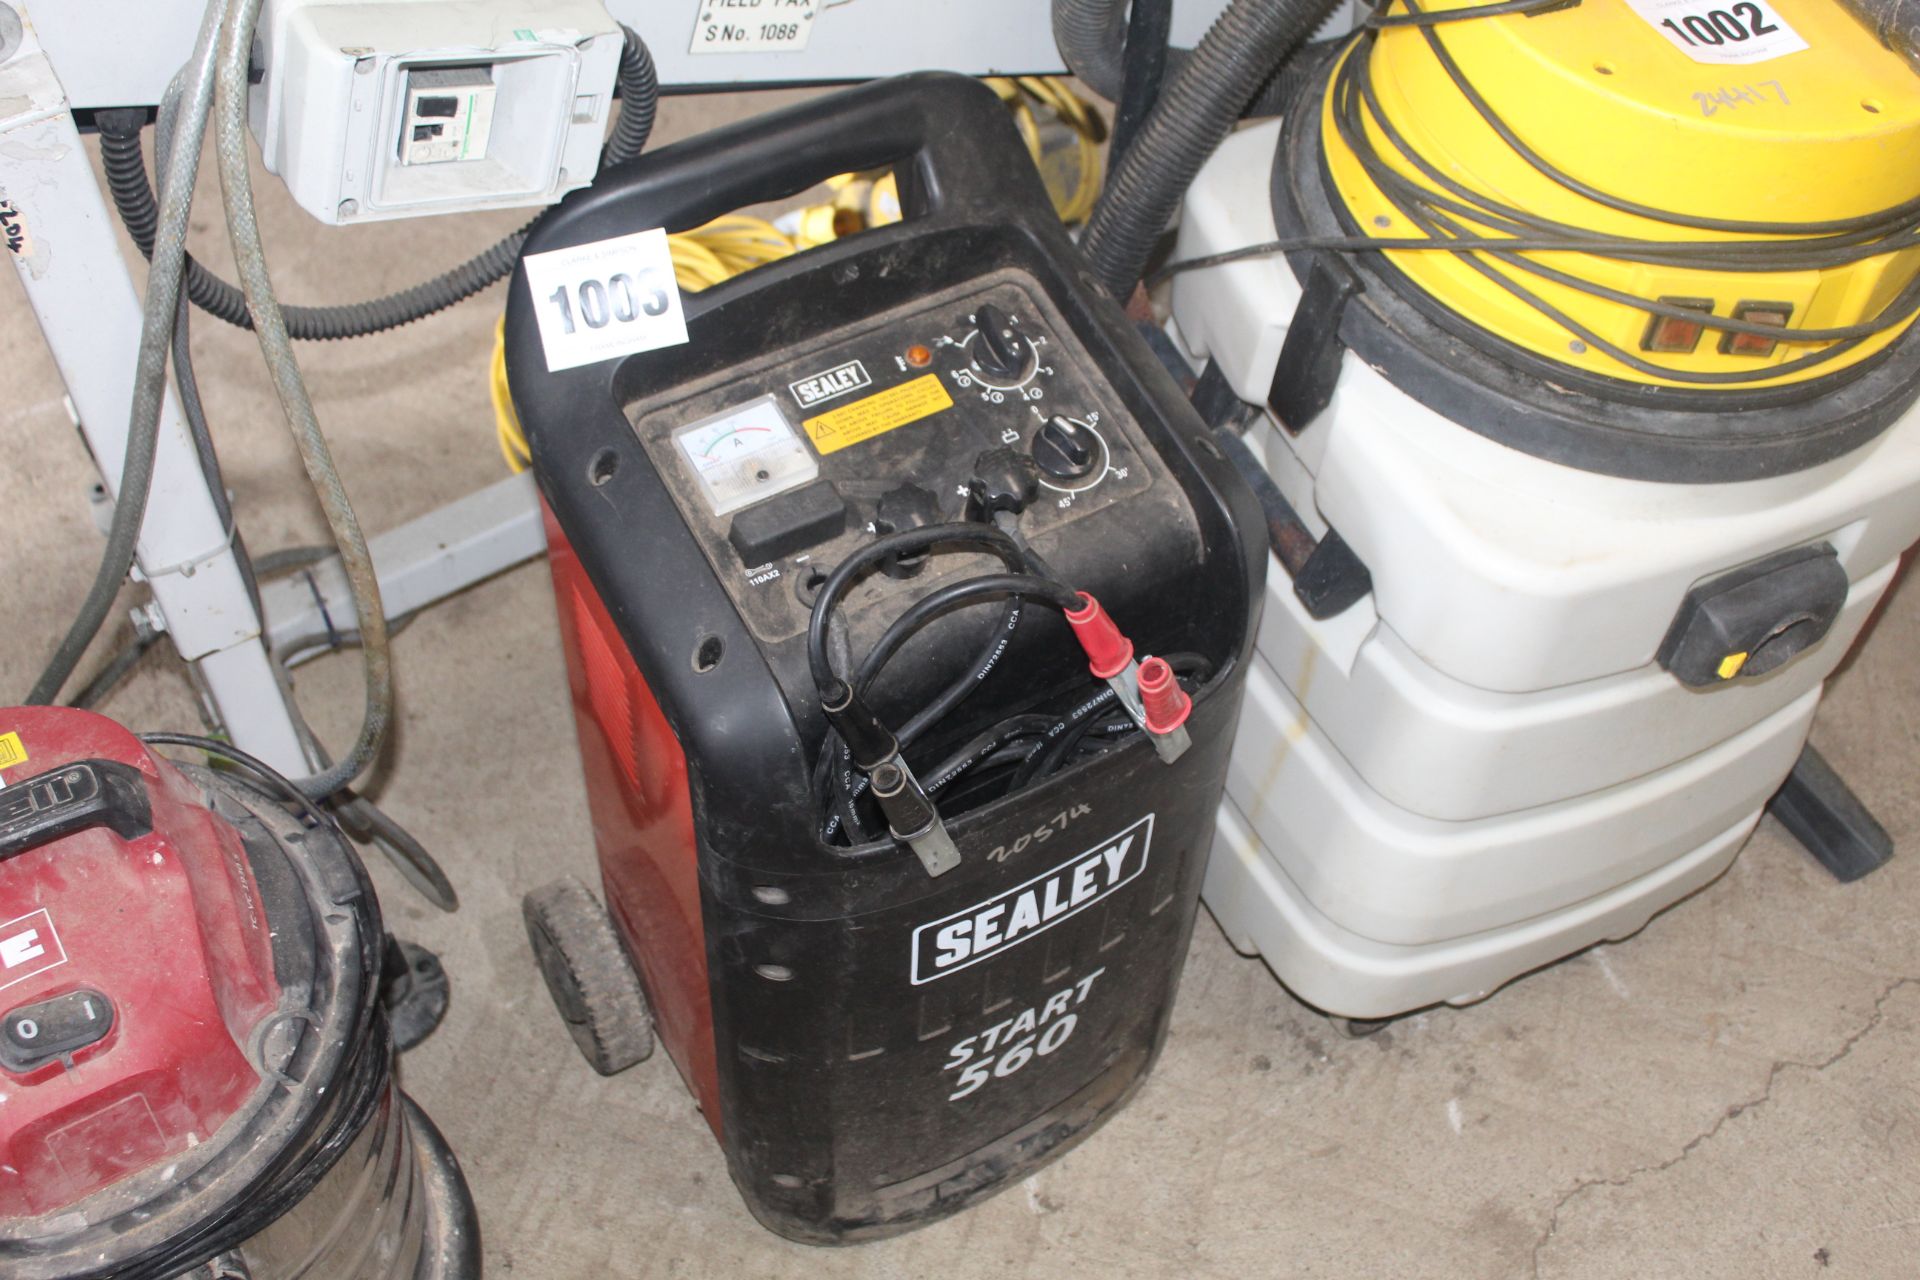 Sealey Start 560 starter charger. V